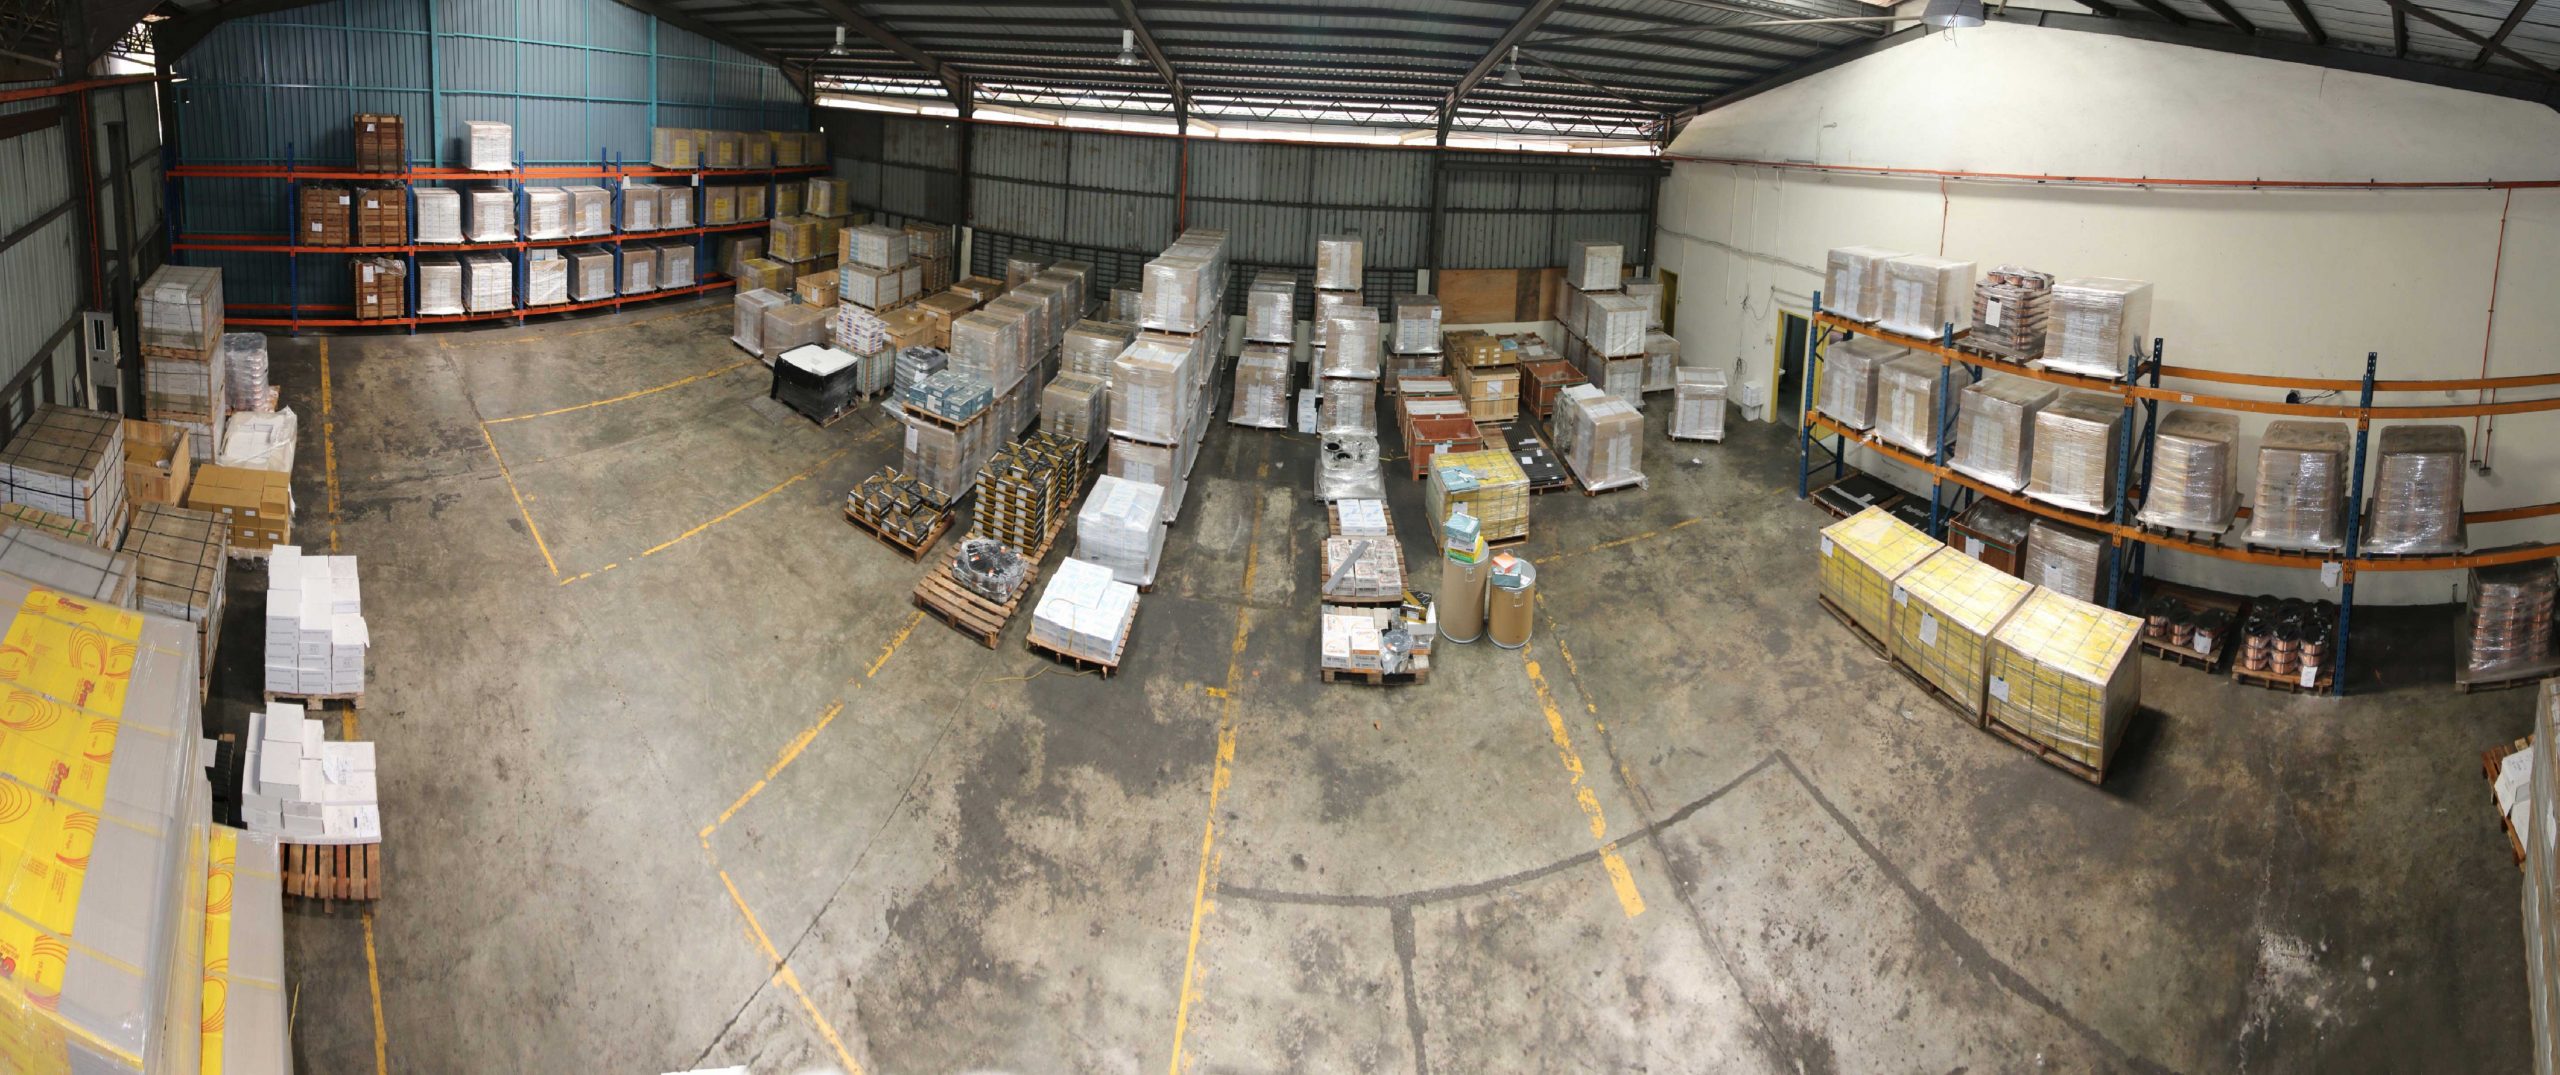 Leeden-Factory-2-Warehouse-2